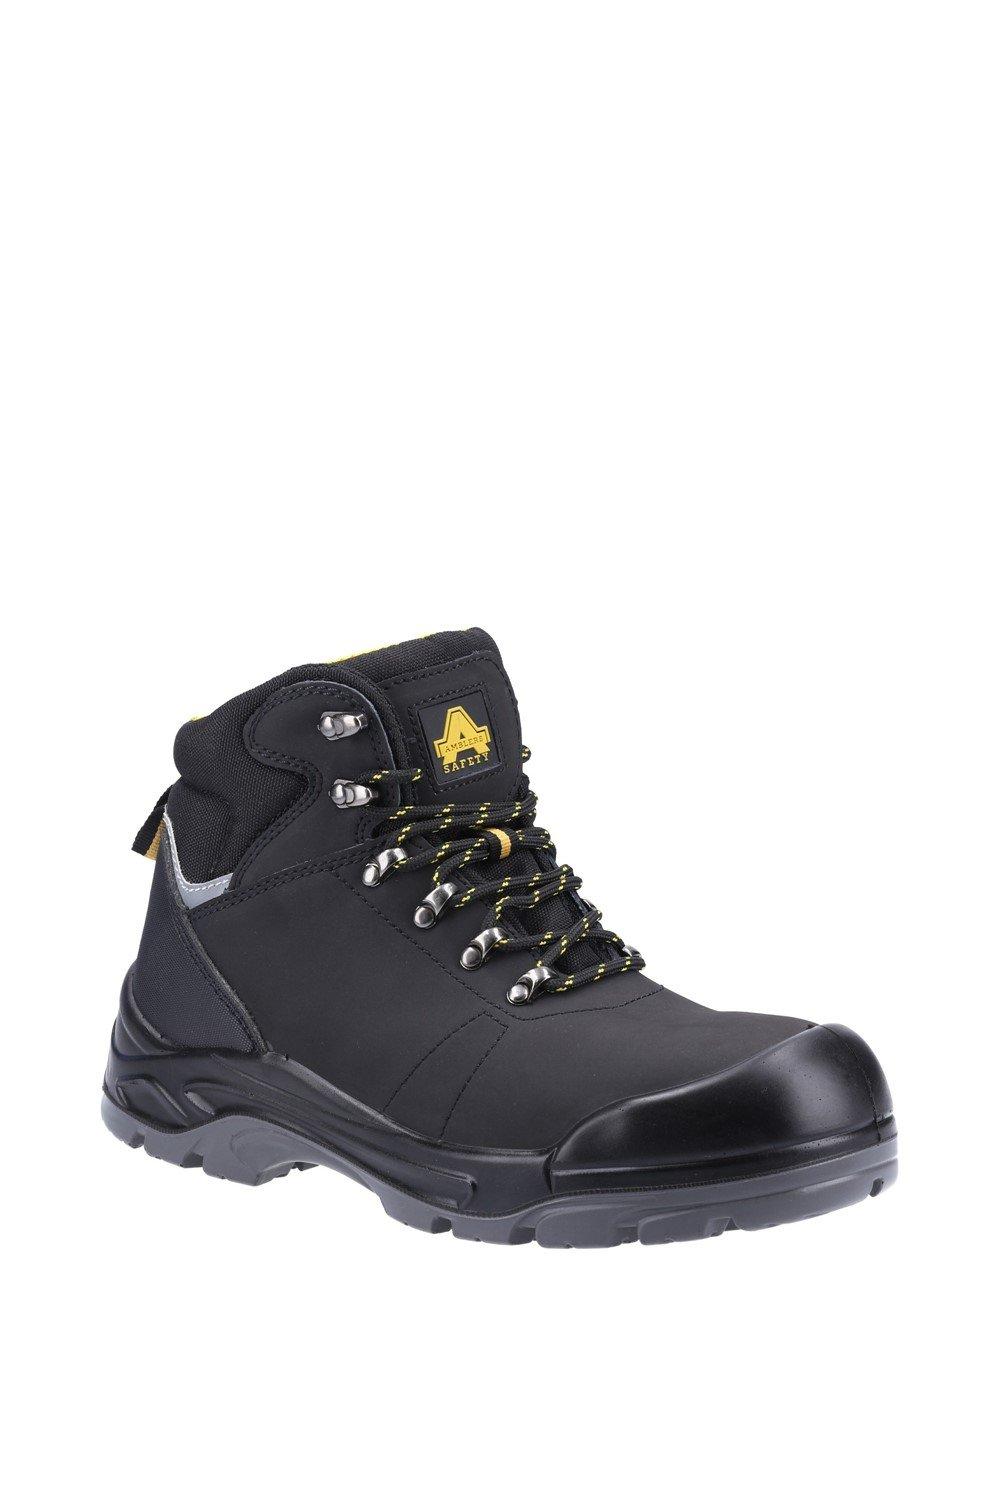 Защитные ботинки AS252 Amblers Safety, черный ботинки мужские рабочие со стальным носком легкие защитные нескользящие дышащие кроссовки для строительства стальной носок